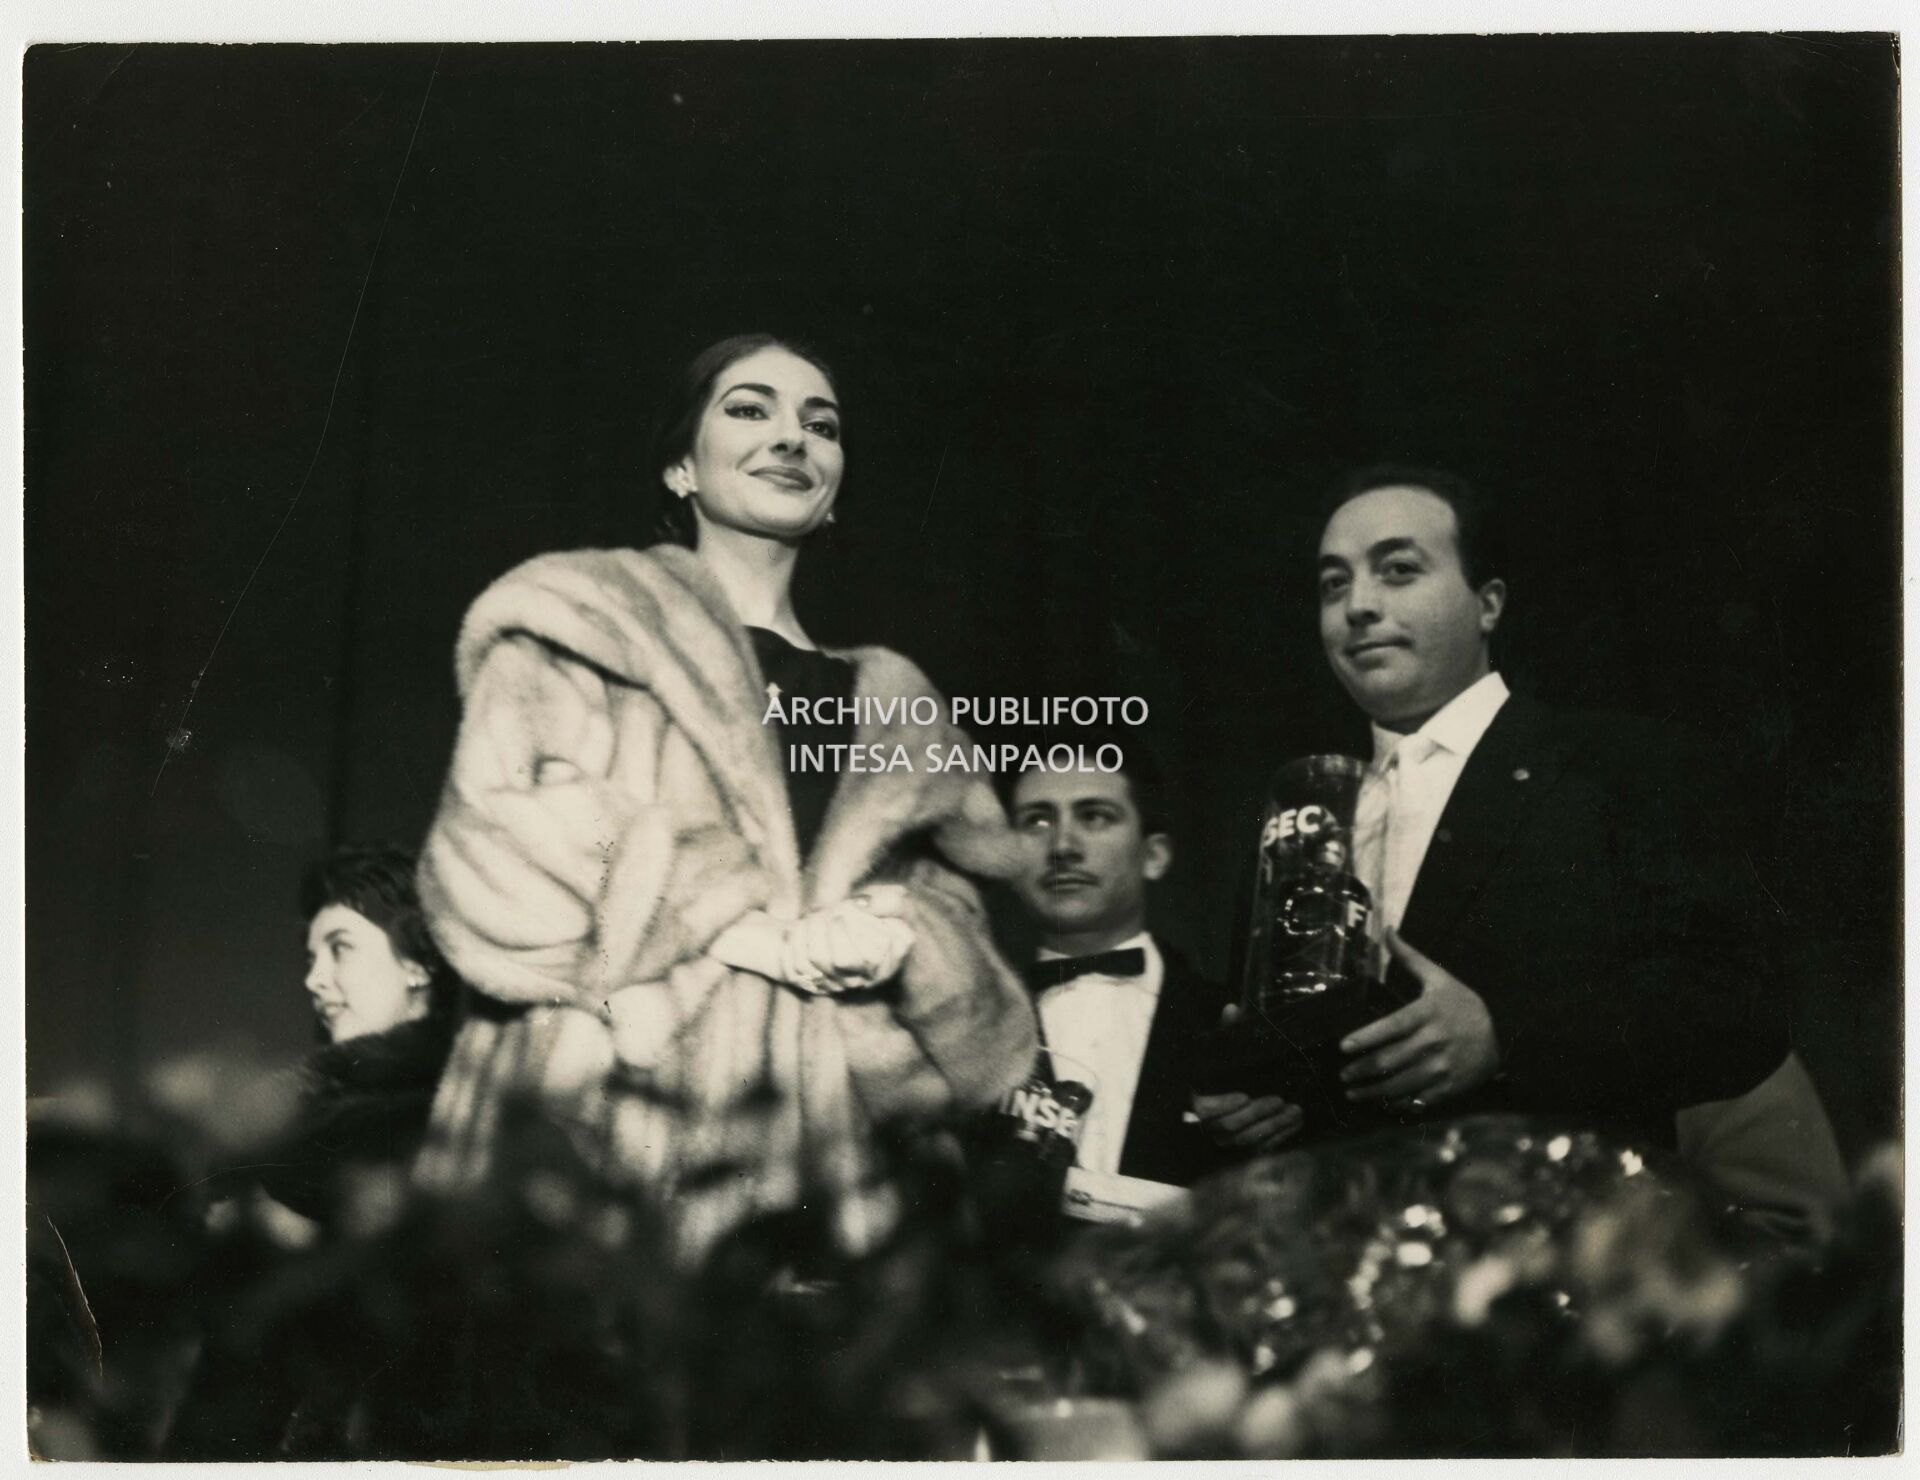 Maria Callas premia con le Guglie d'oro gli astri della musica leggera al Palazzo dello Sport a Milano in occasione del Gran galà della canzone; in primo piano Gino Latilla.